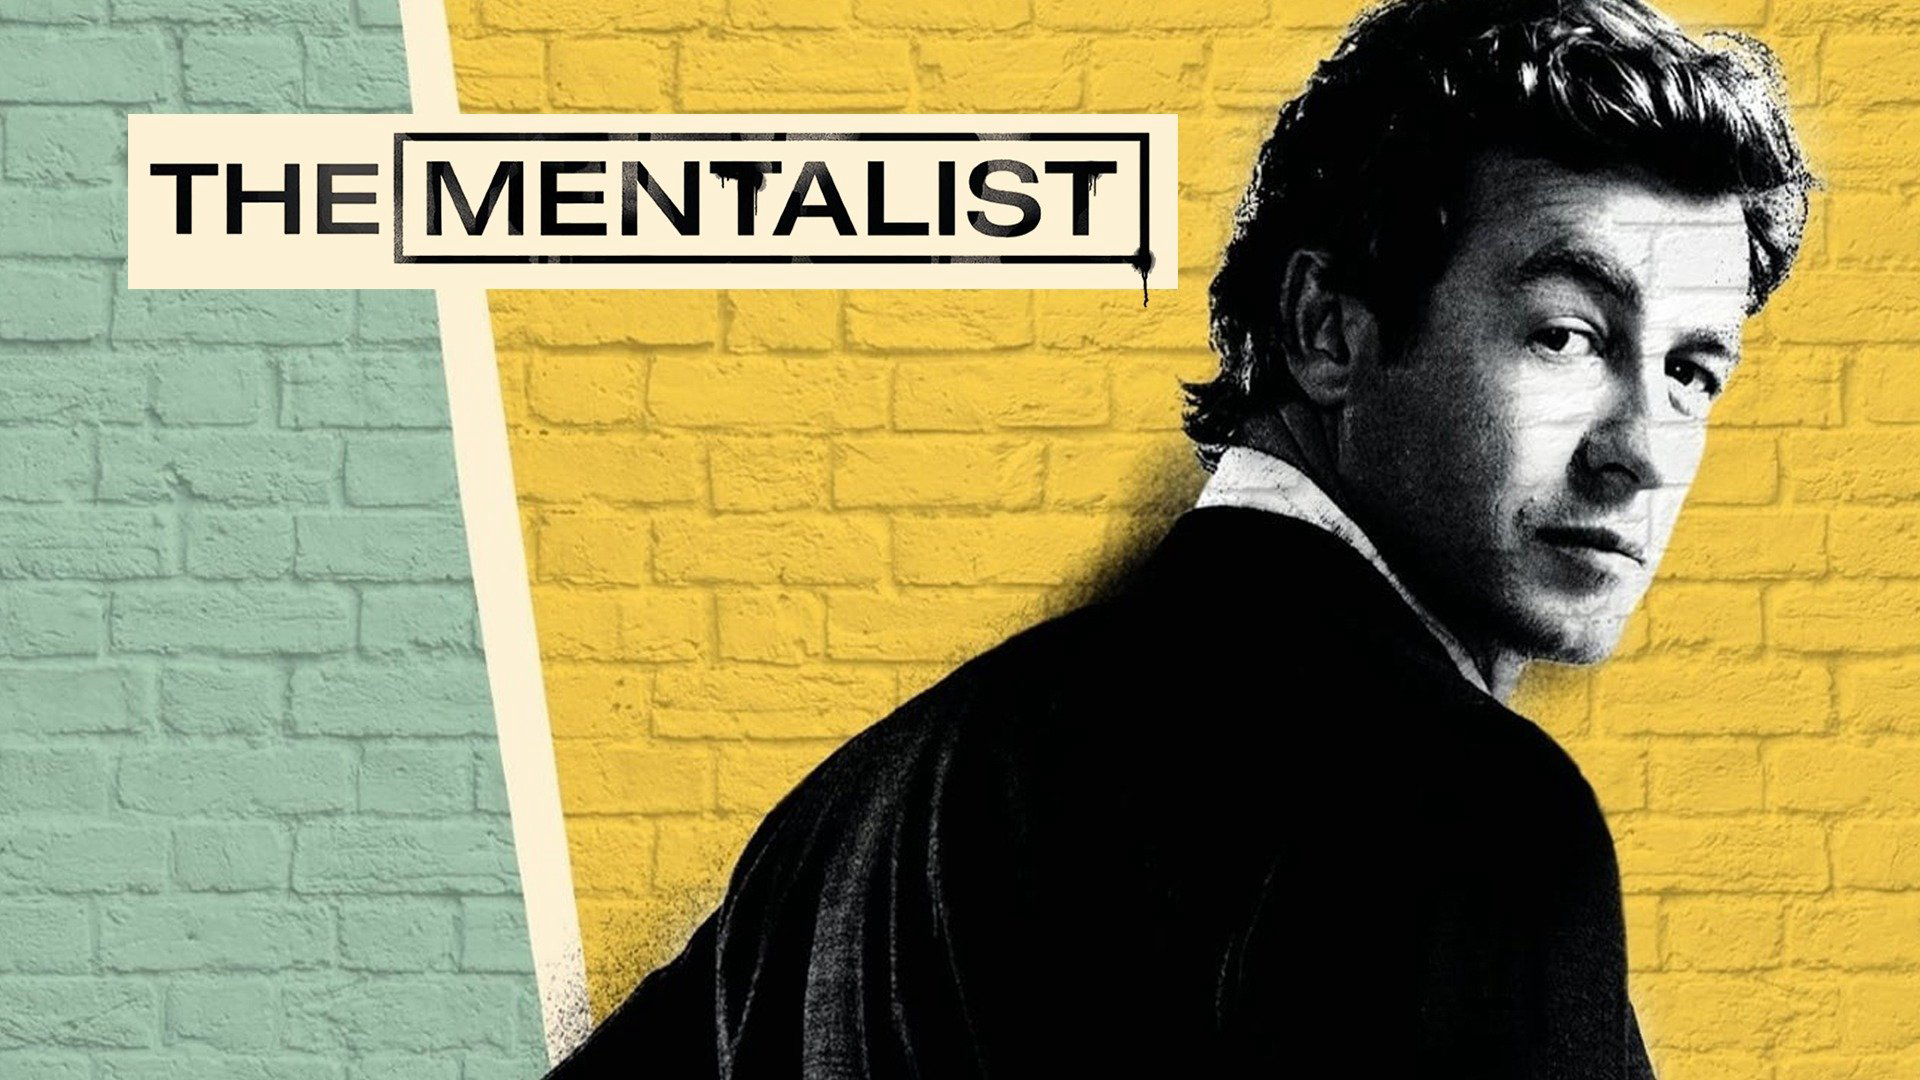 The Mentalist (Season 6) / The Mentalist (Season 6) (2013)